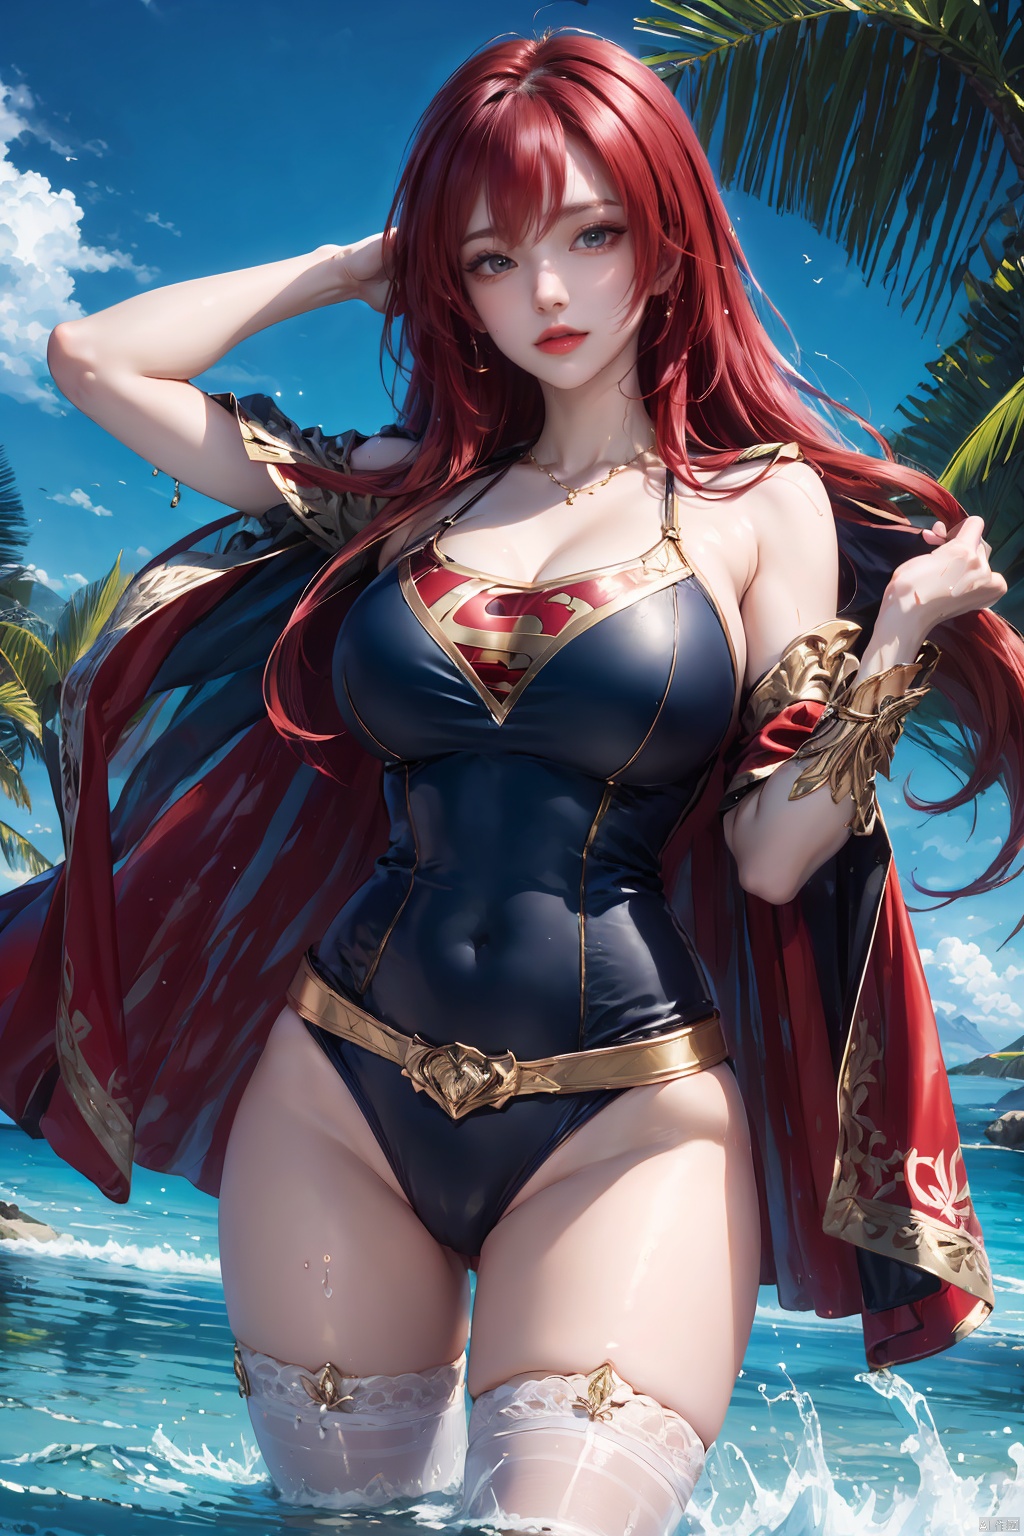  wet, Swimsuit,red hair, super girl